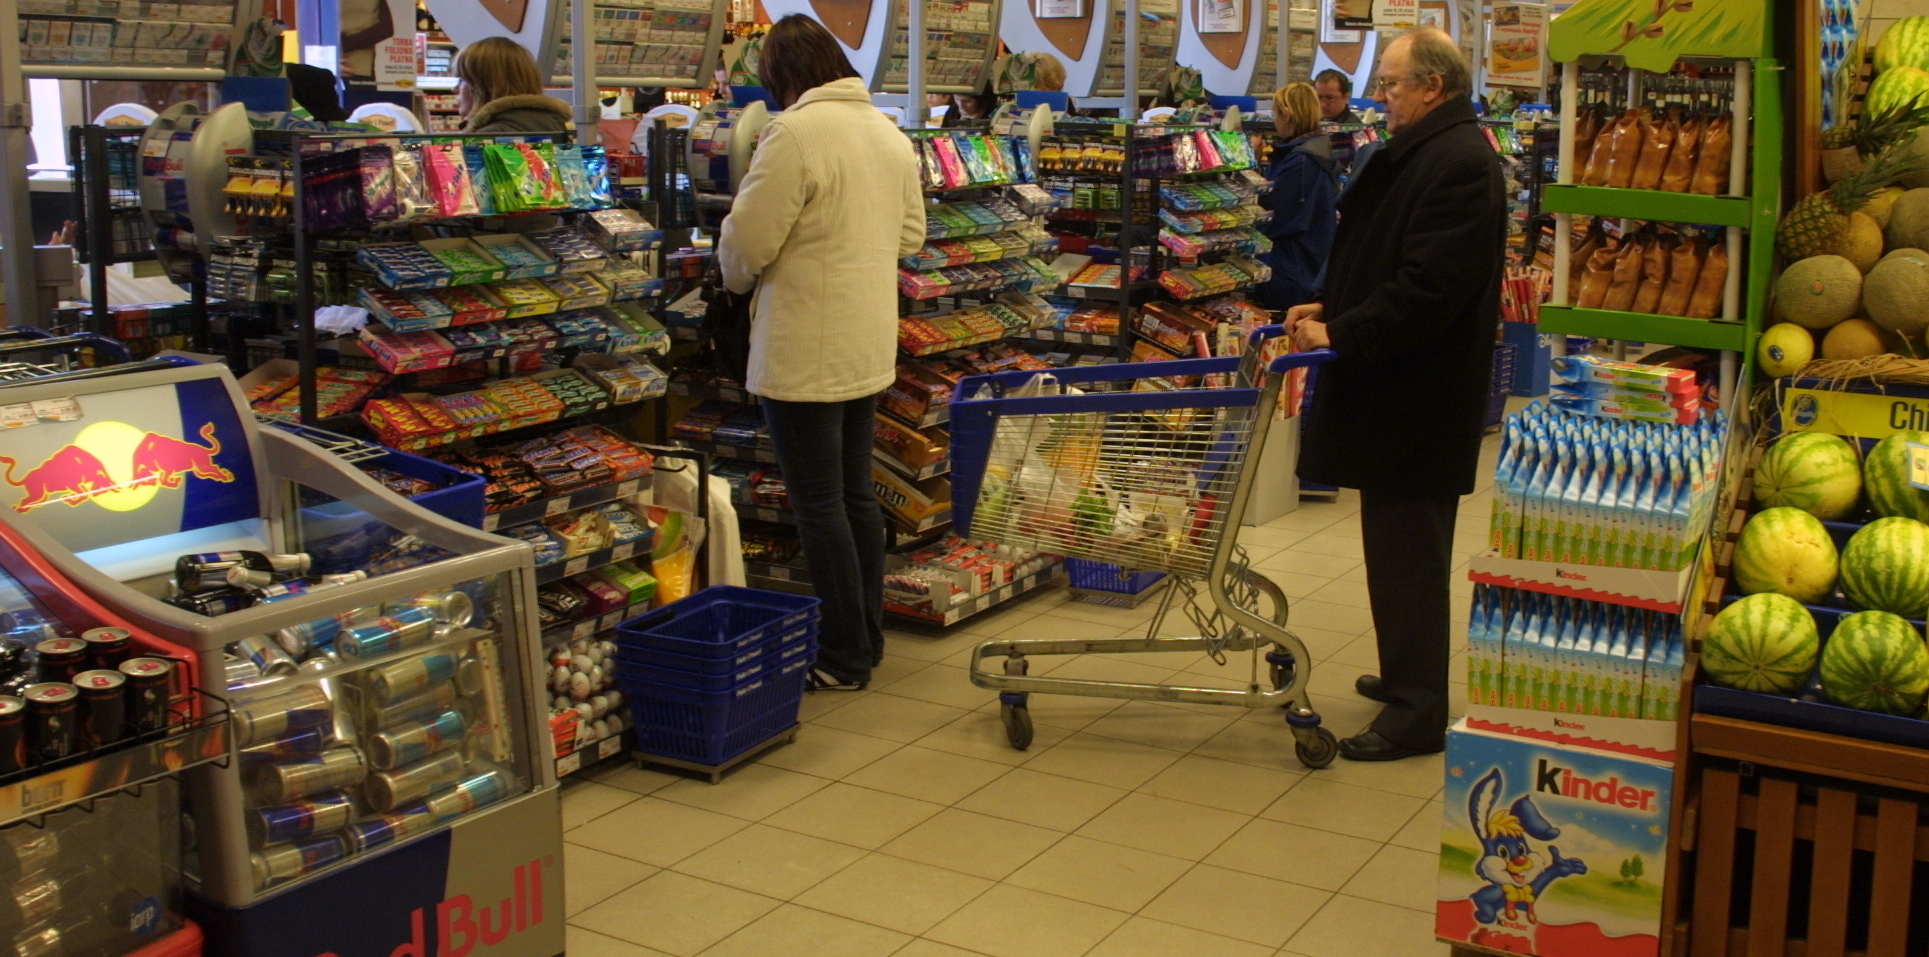 Tłok w sklepie, kolejki najbardziej irytujące dla polskich konsumentów